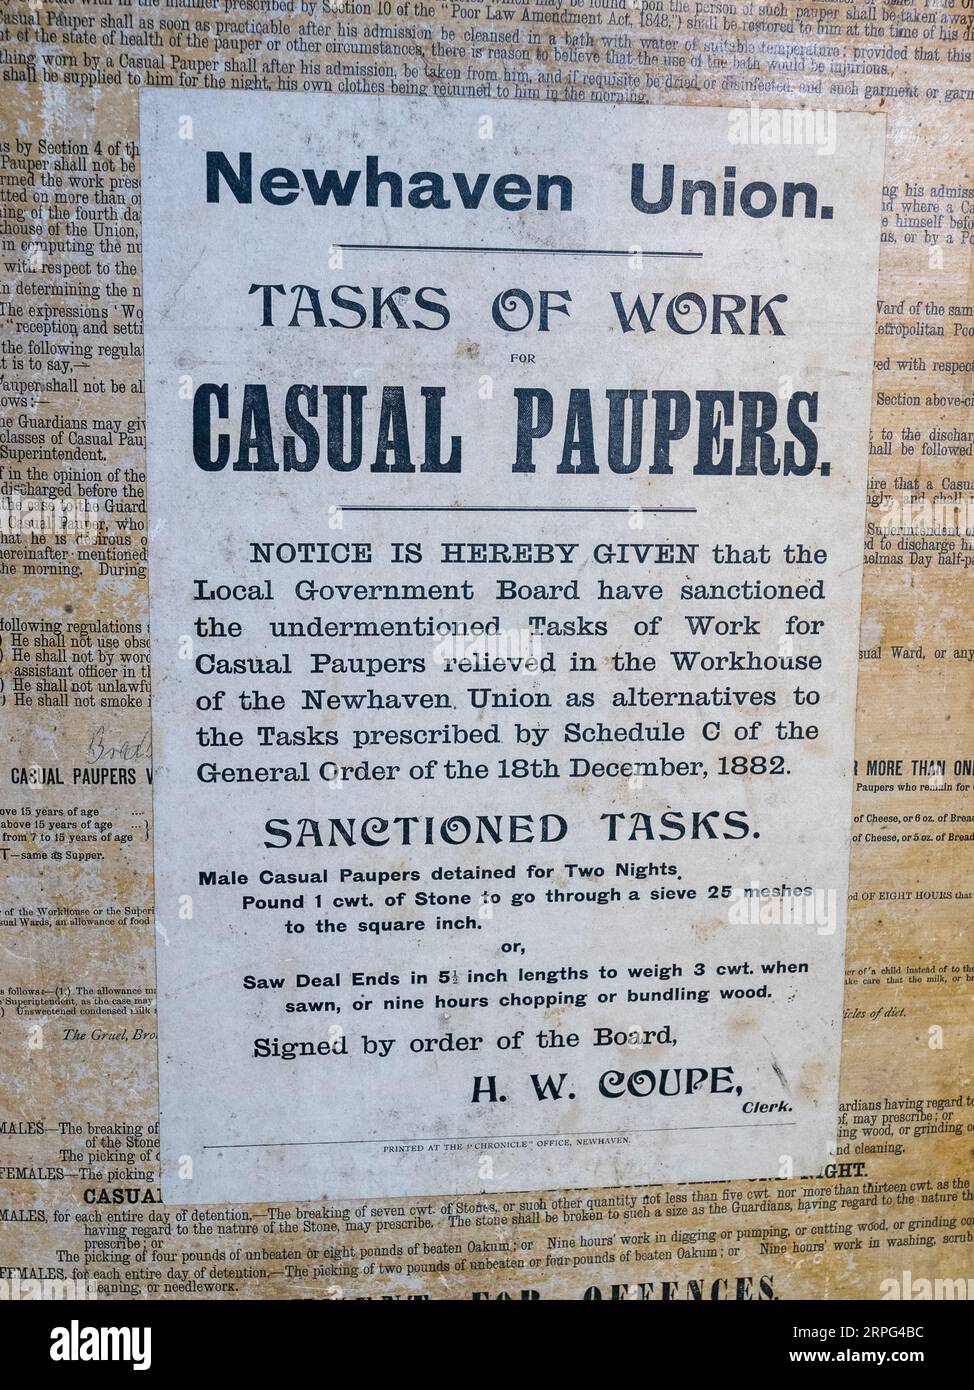 Affiche « tâches de travail Casual paupers » de Newhaven Union de 1882 exposée au Newhaven Museum, Newhaven, East Sussex, Royaume-Uni. Banque D'Images